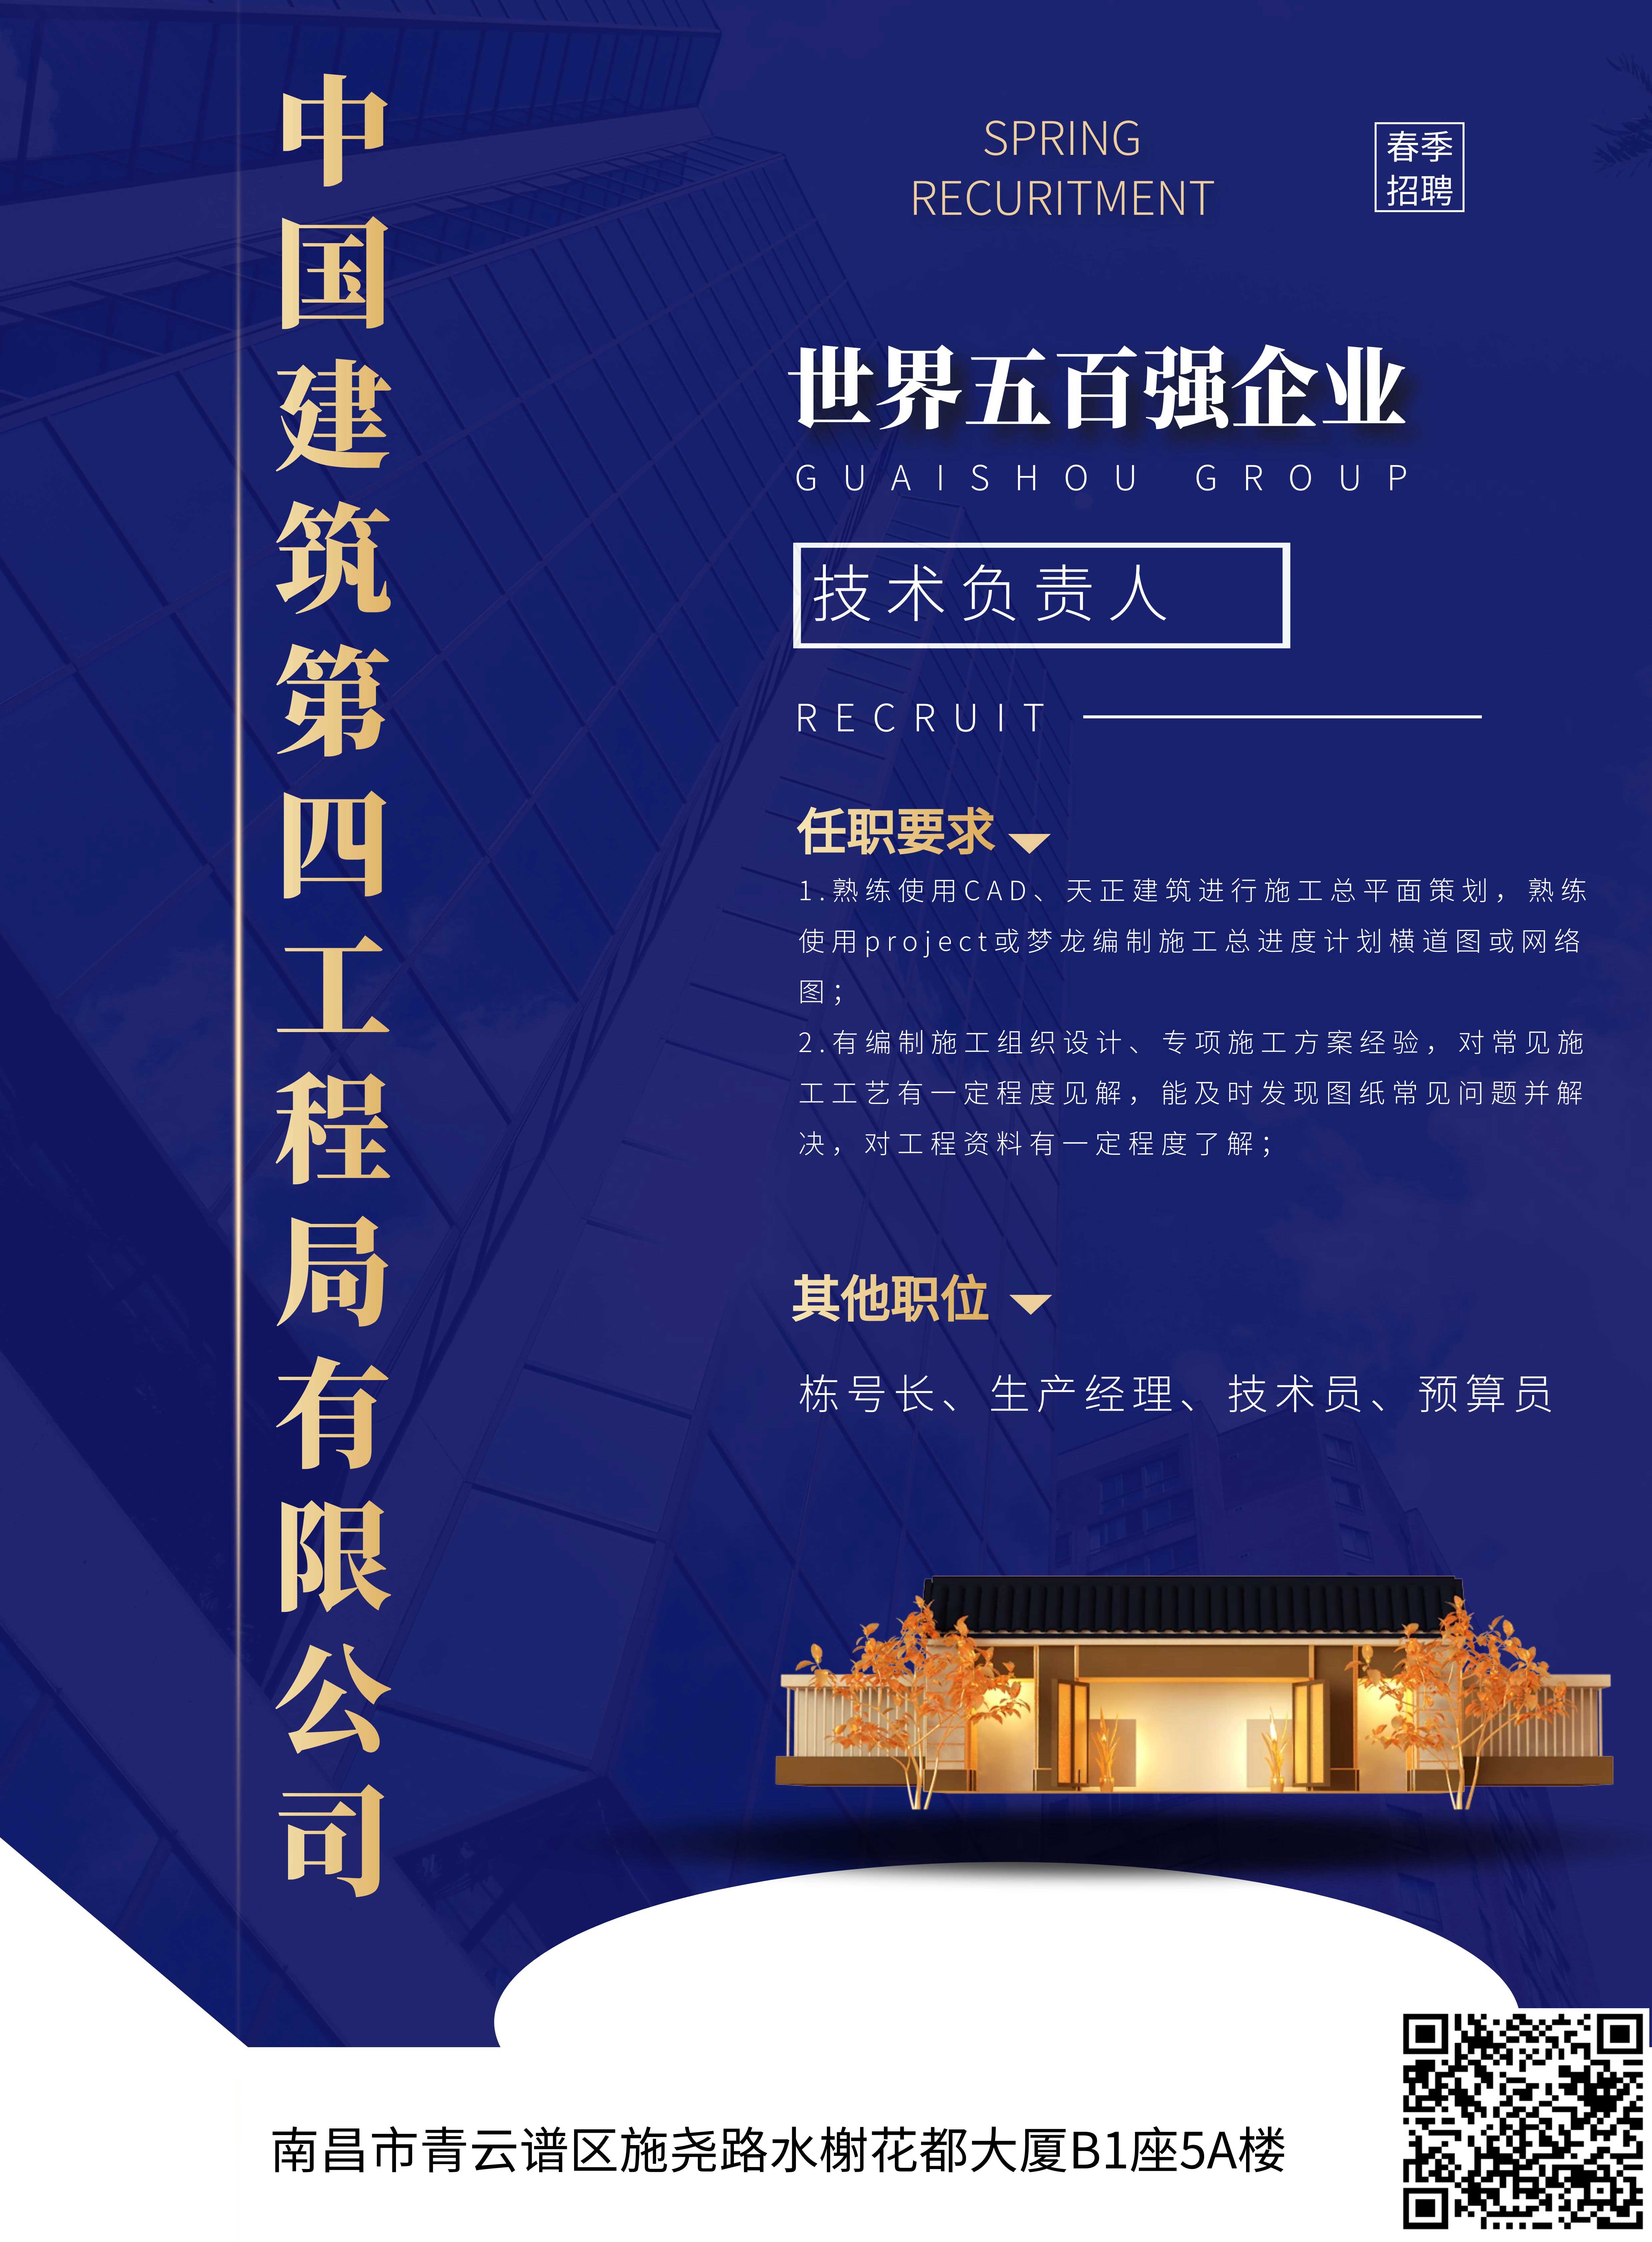 中国建筑第四工程局有限公司江西分公司